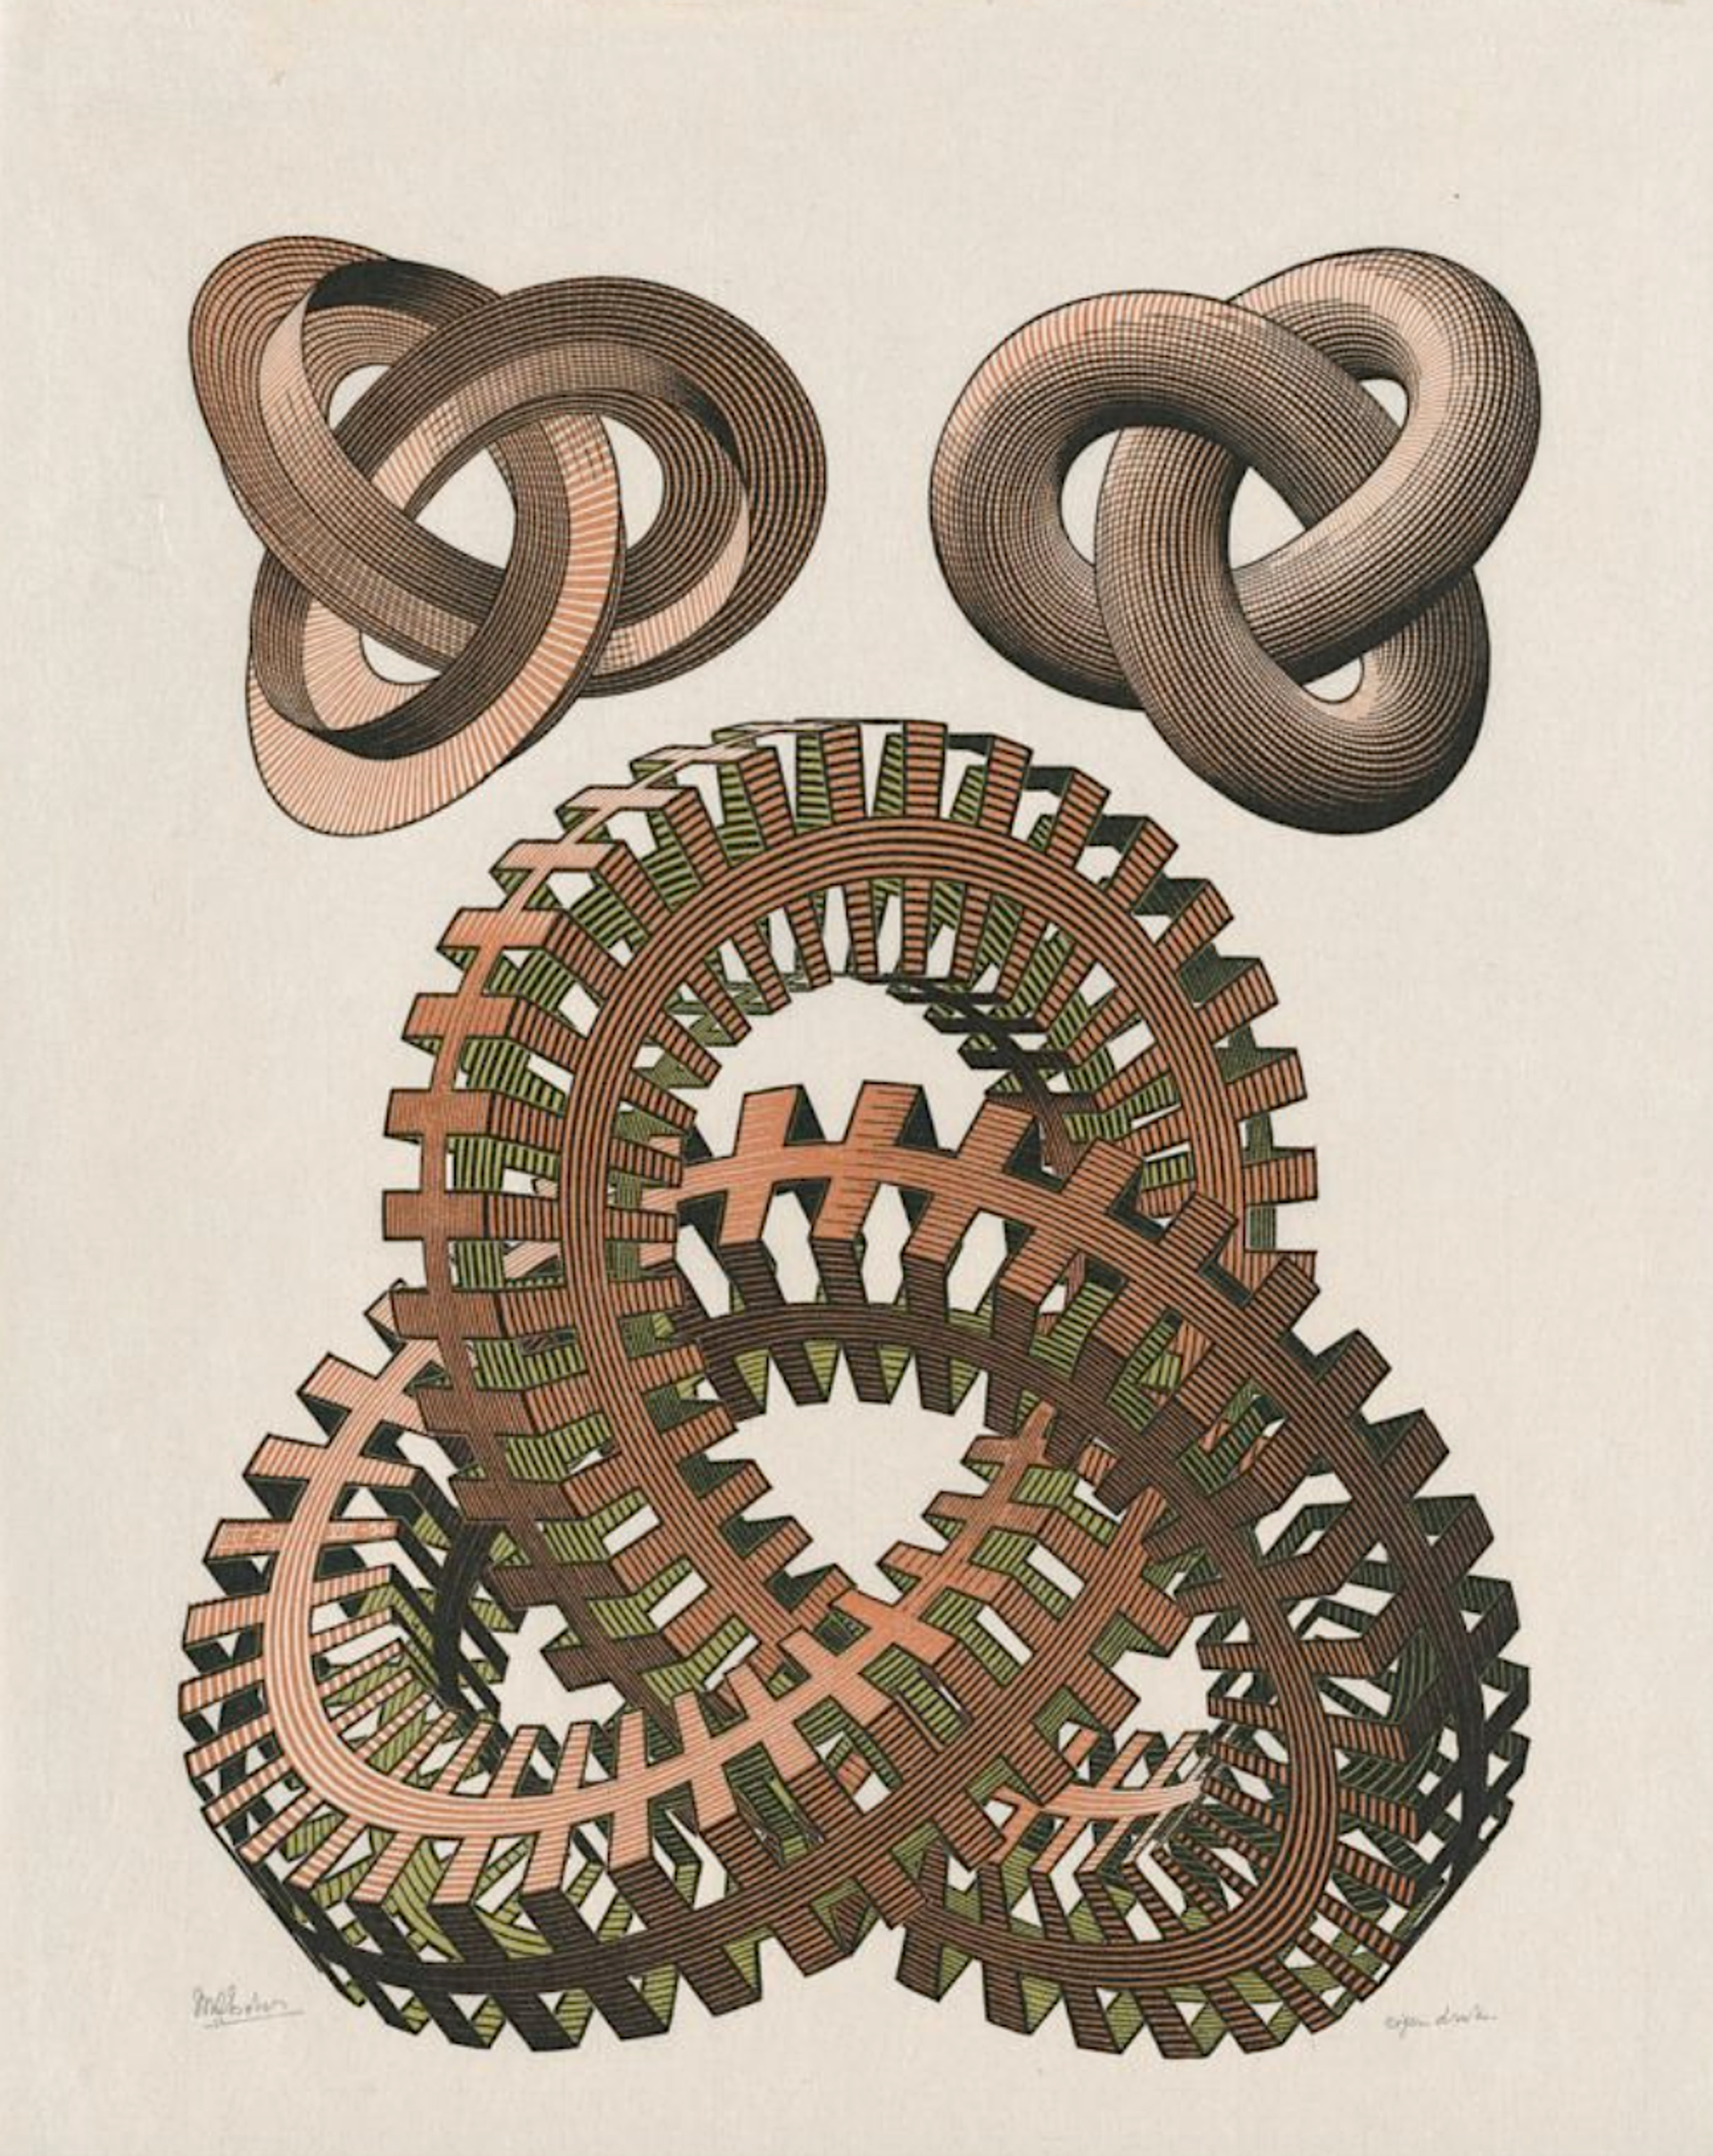 Knots by M.C. Escher